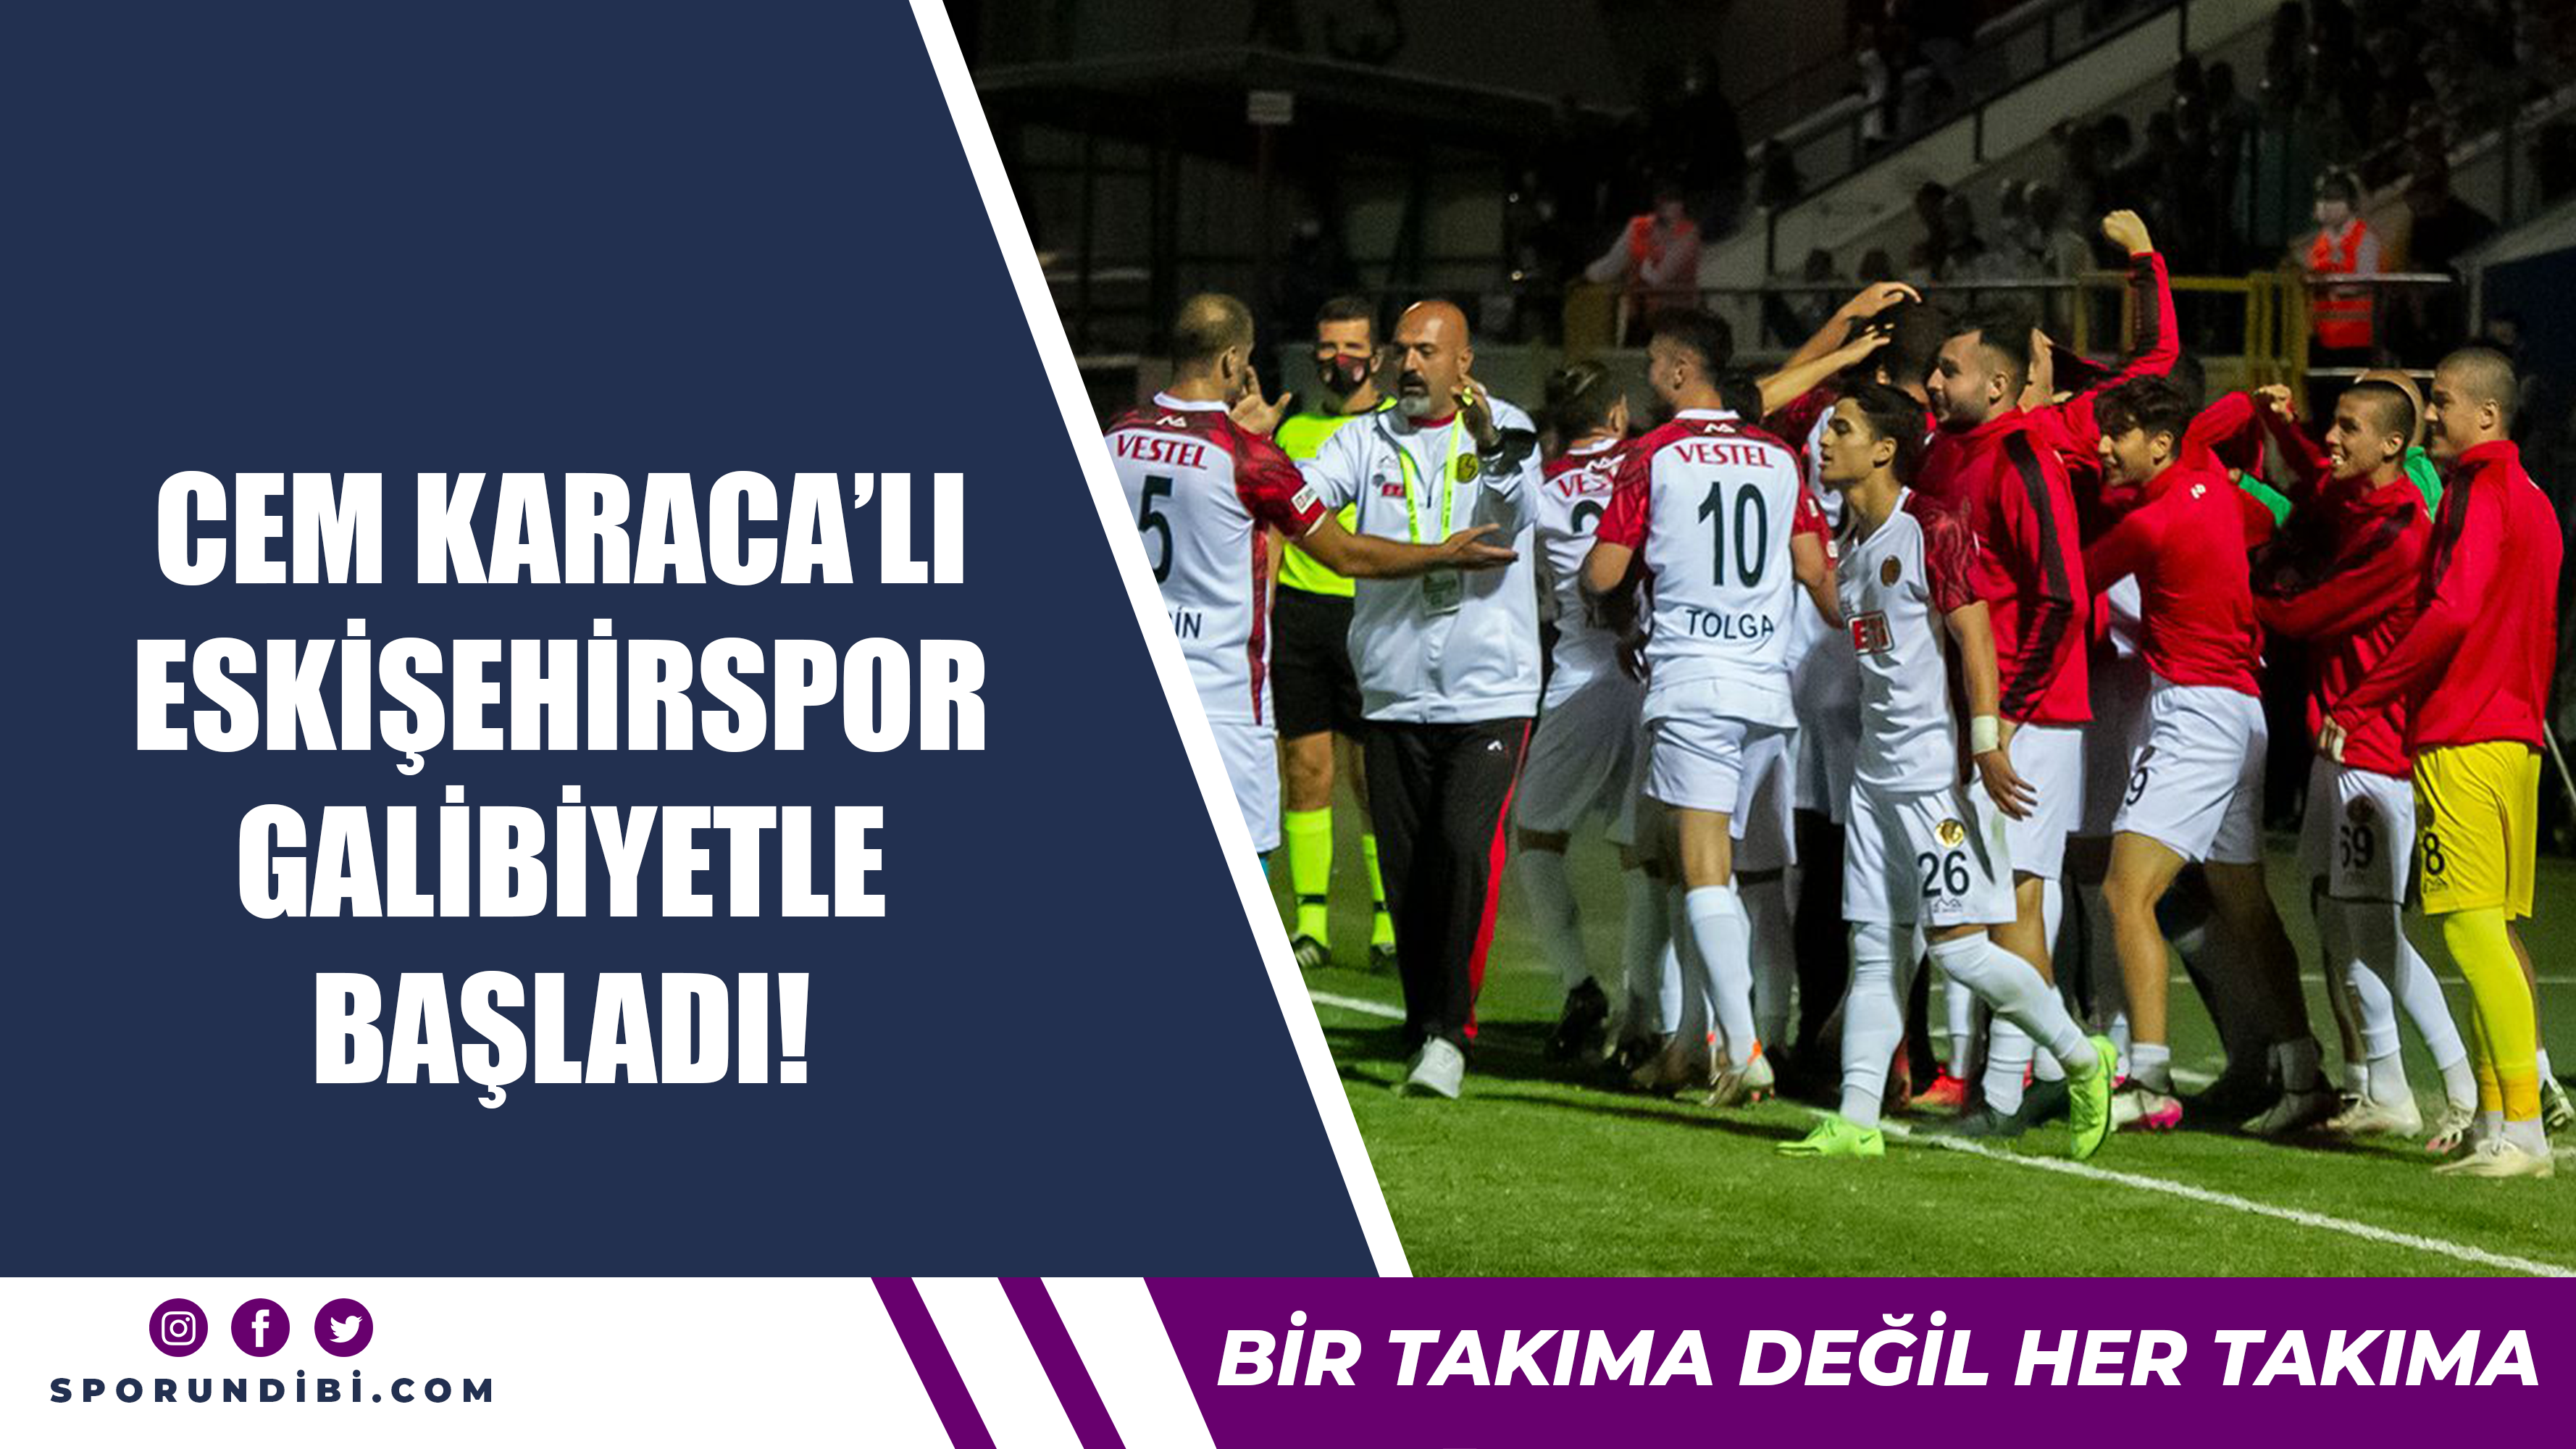 Cem Karaca'lı Eskişehirspor galibiyetle başladı!